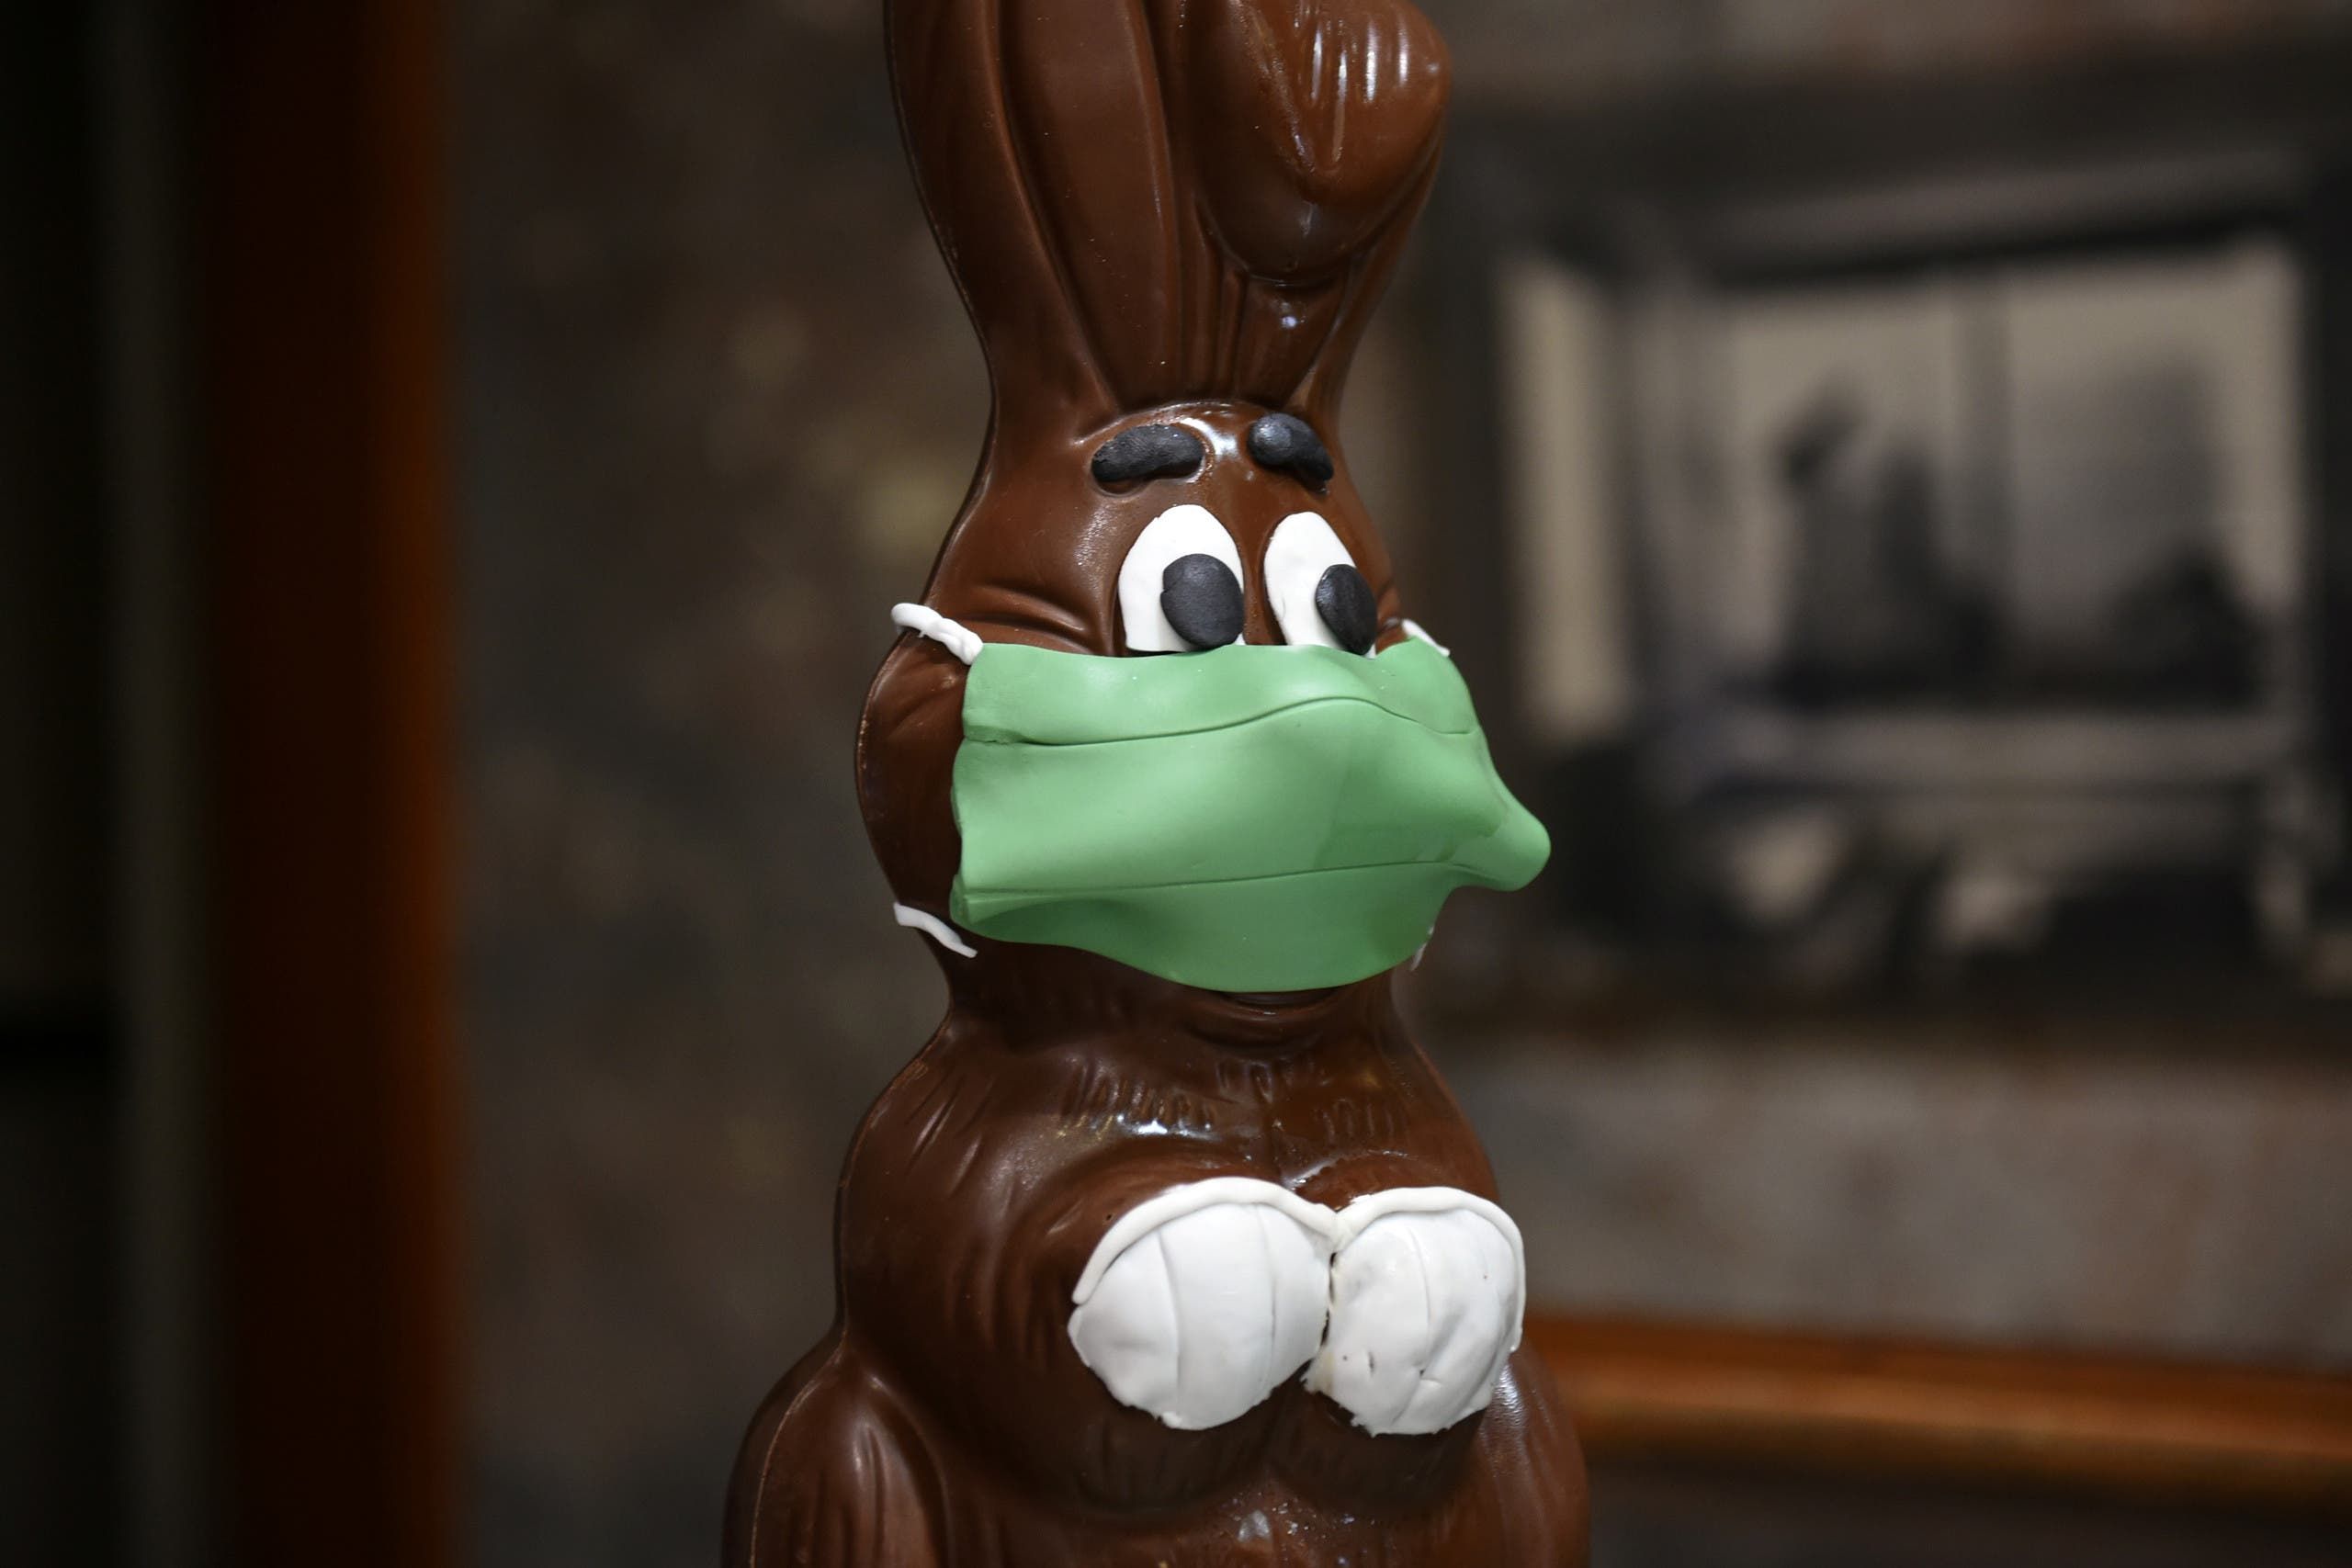 أرنب من الشوكولاتة يرتدي كمامة في اليونان